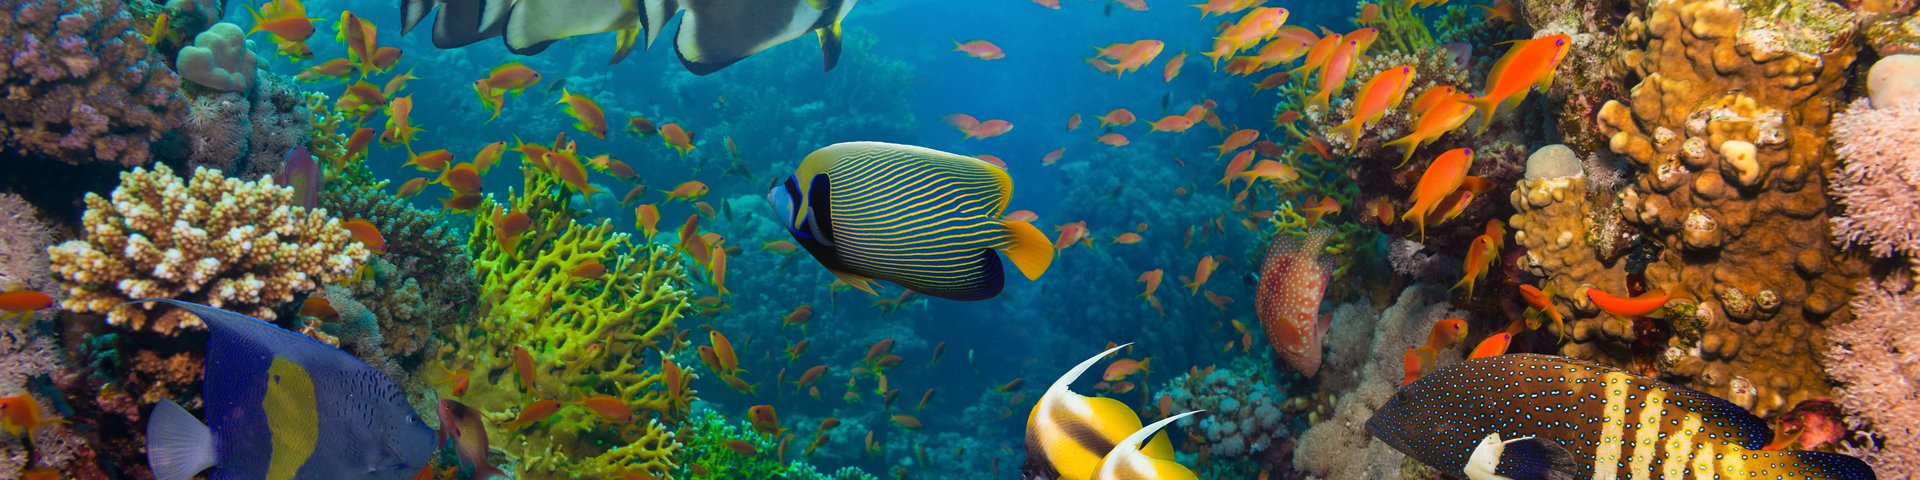 Korallen und Fische - Unterwasser